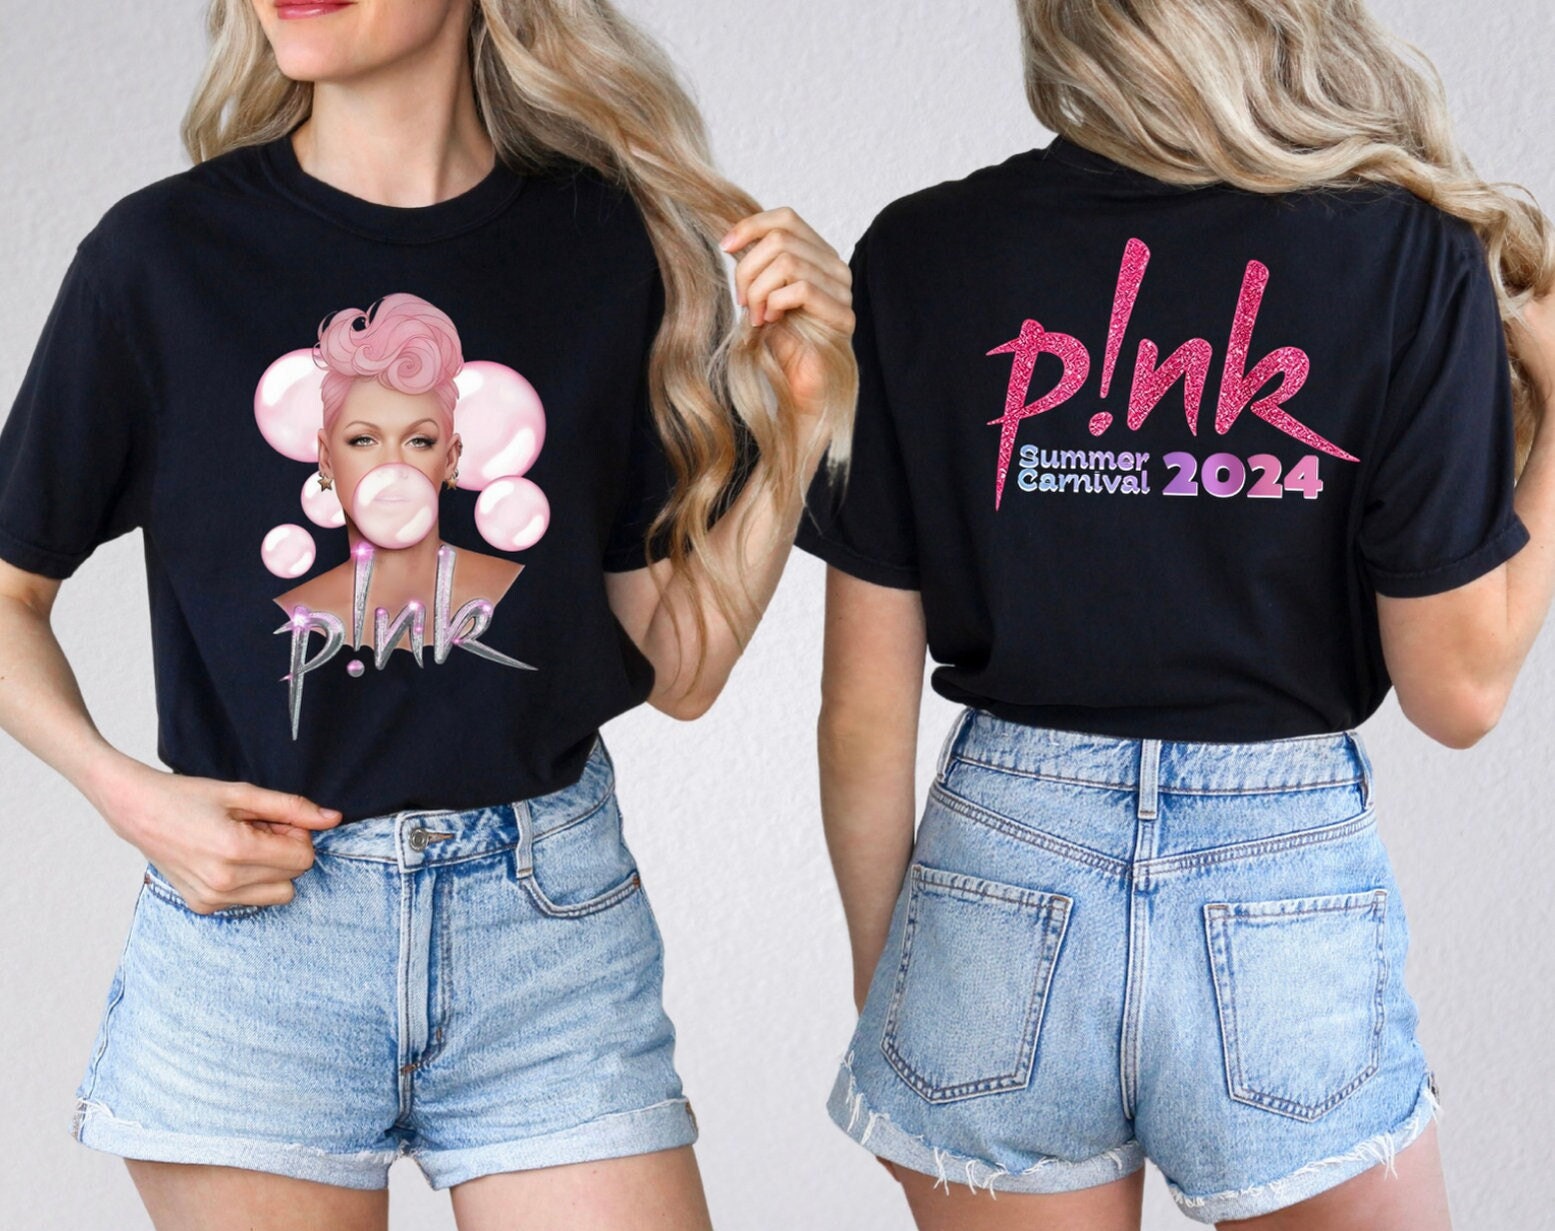 P!nk Pink Singer Summer Carnival 2024 Tour Shirt,Pink Fan Lovers Shirt